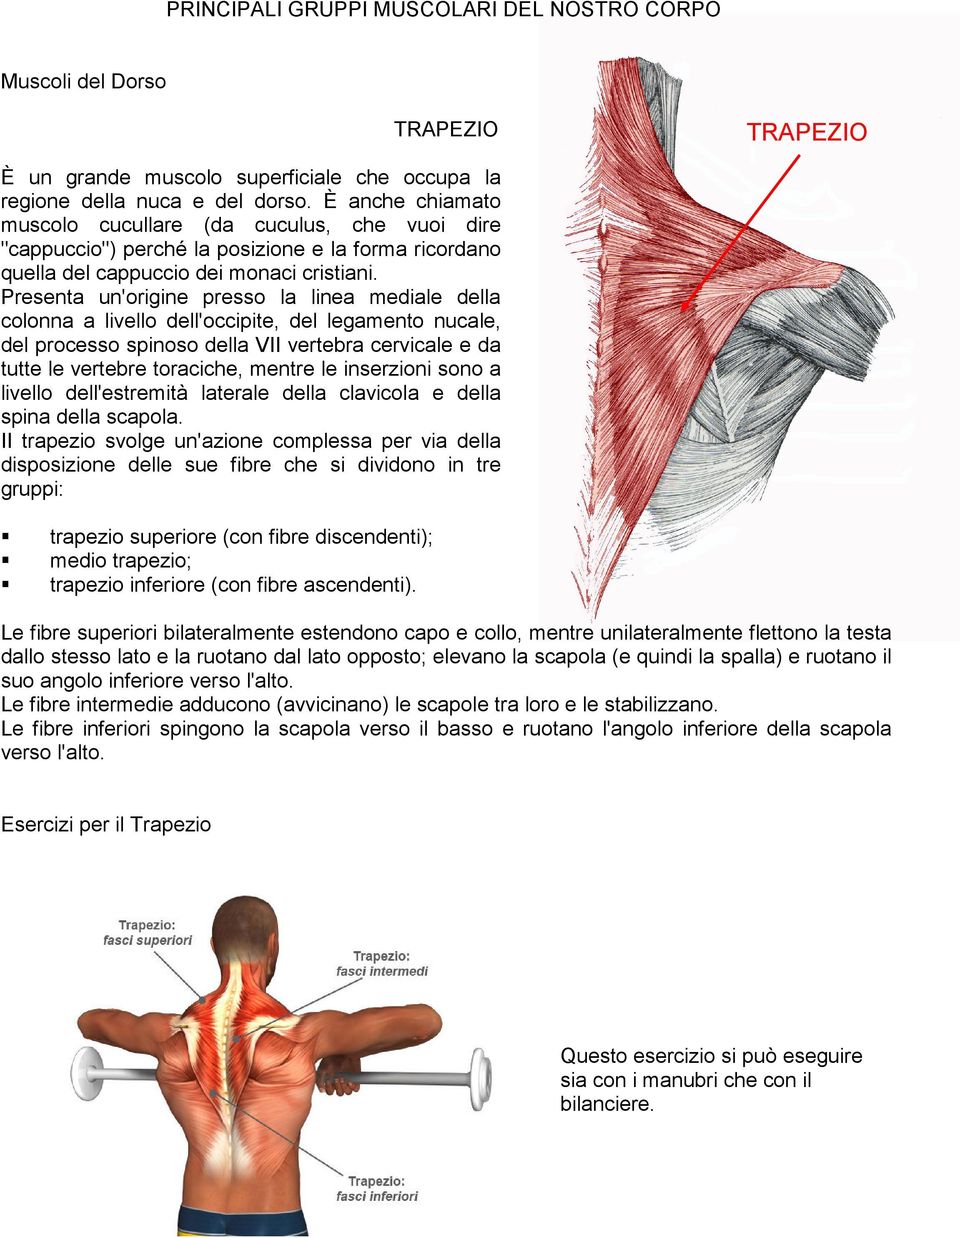 Presenta un'origine presso la linea mediale della colonna a livello dell'occipite, del legamento nucale, del processo spinoso della VII vertebra cervicale e da tutte le vertebre toraciche, mentre le